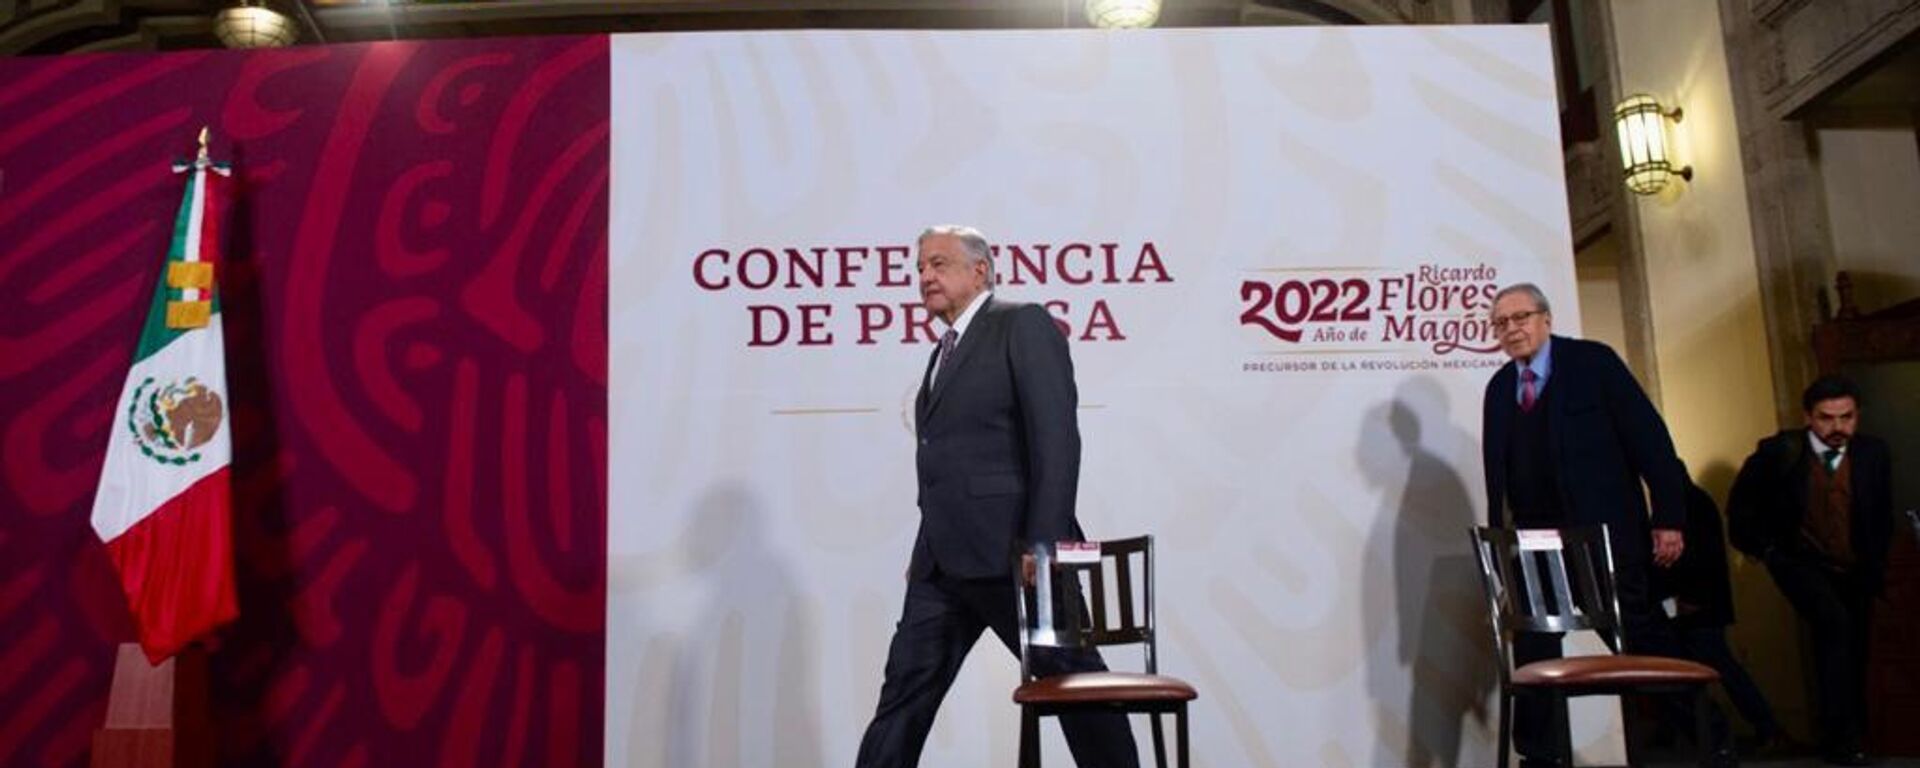 Andrés Manuel López Obrador, presidente de México - Sputnik Mundo, 1920, 27.12.2022